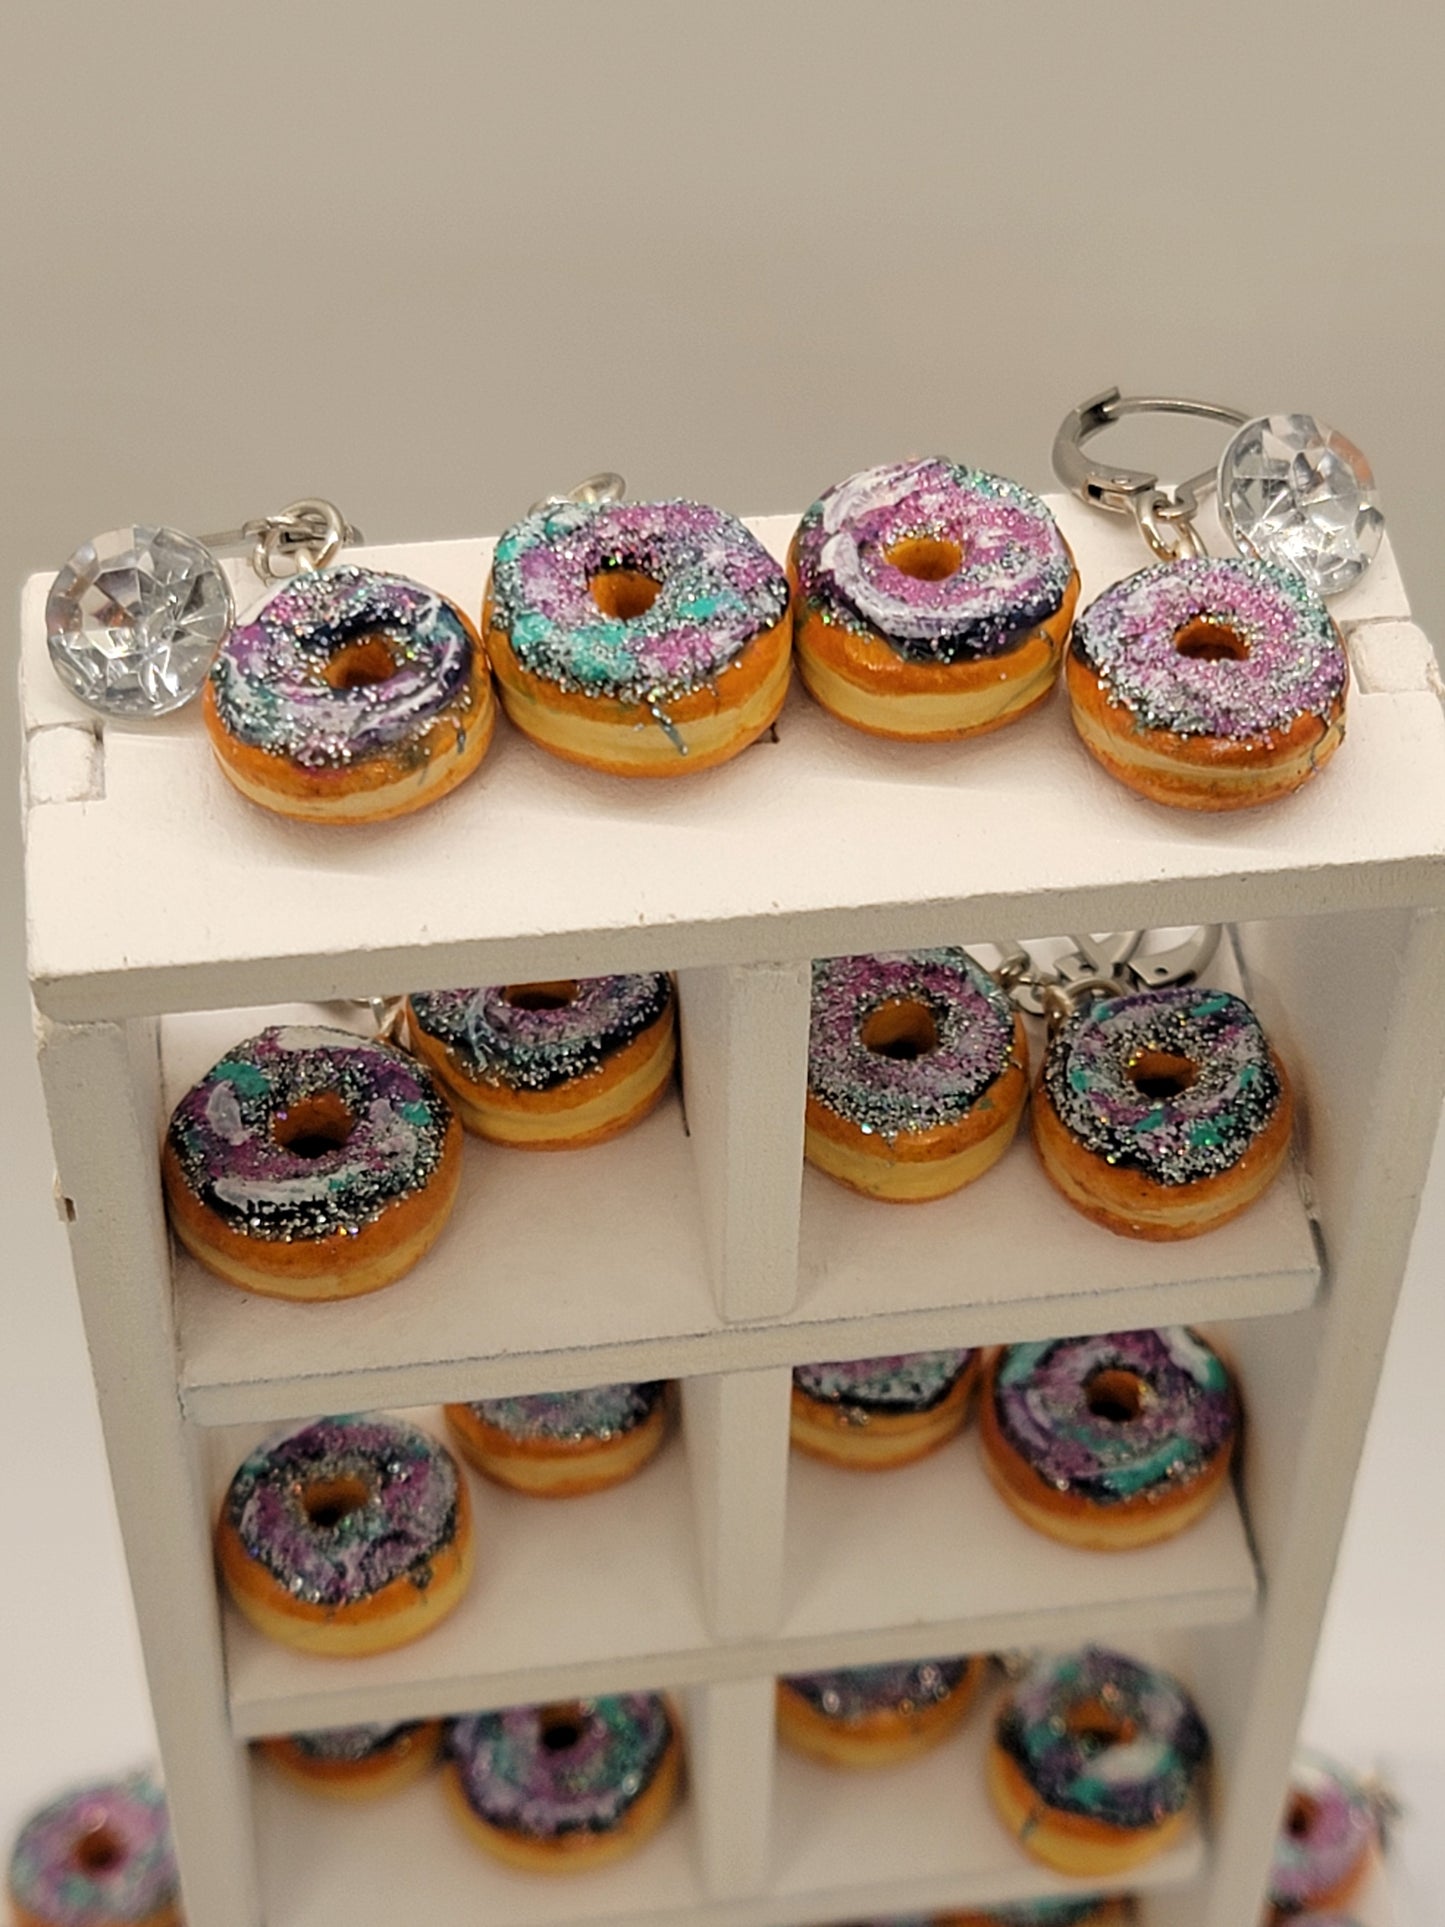 Galaxy donut earrings